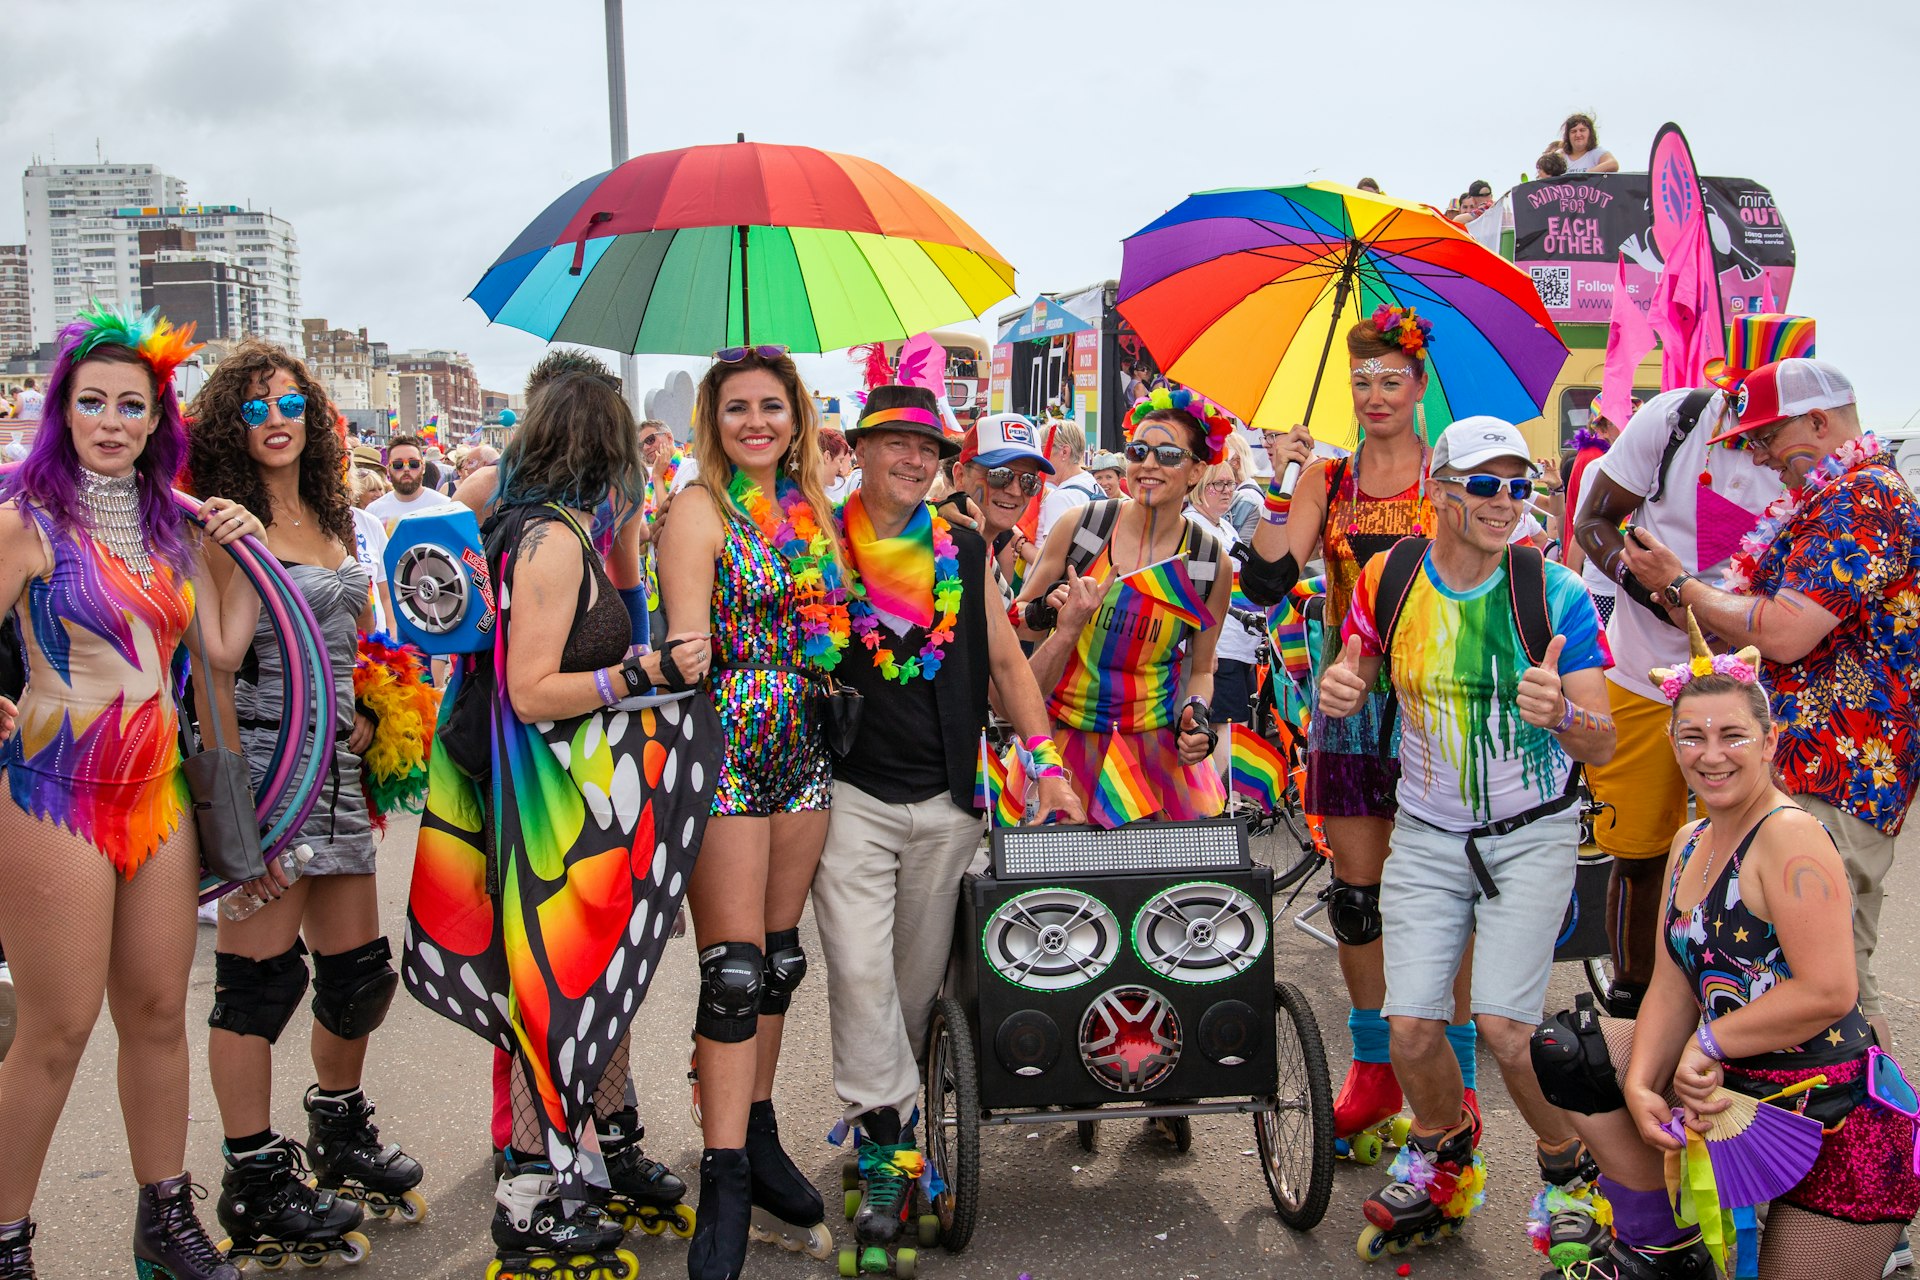 People enjoying the 2019 Brighton Pride Parade. Brighton, England 